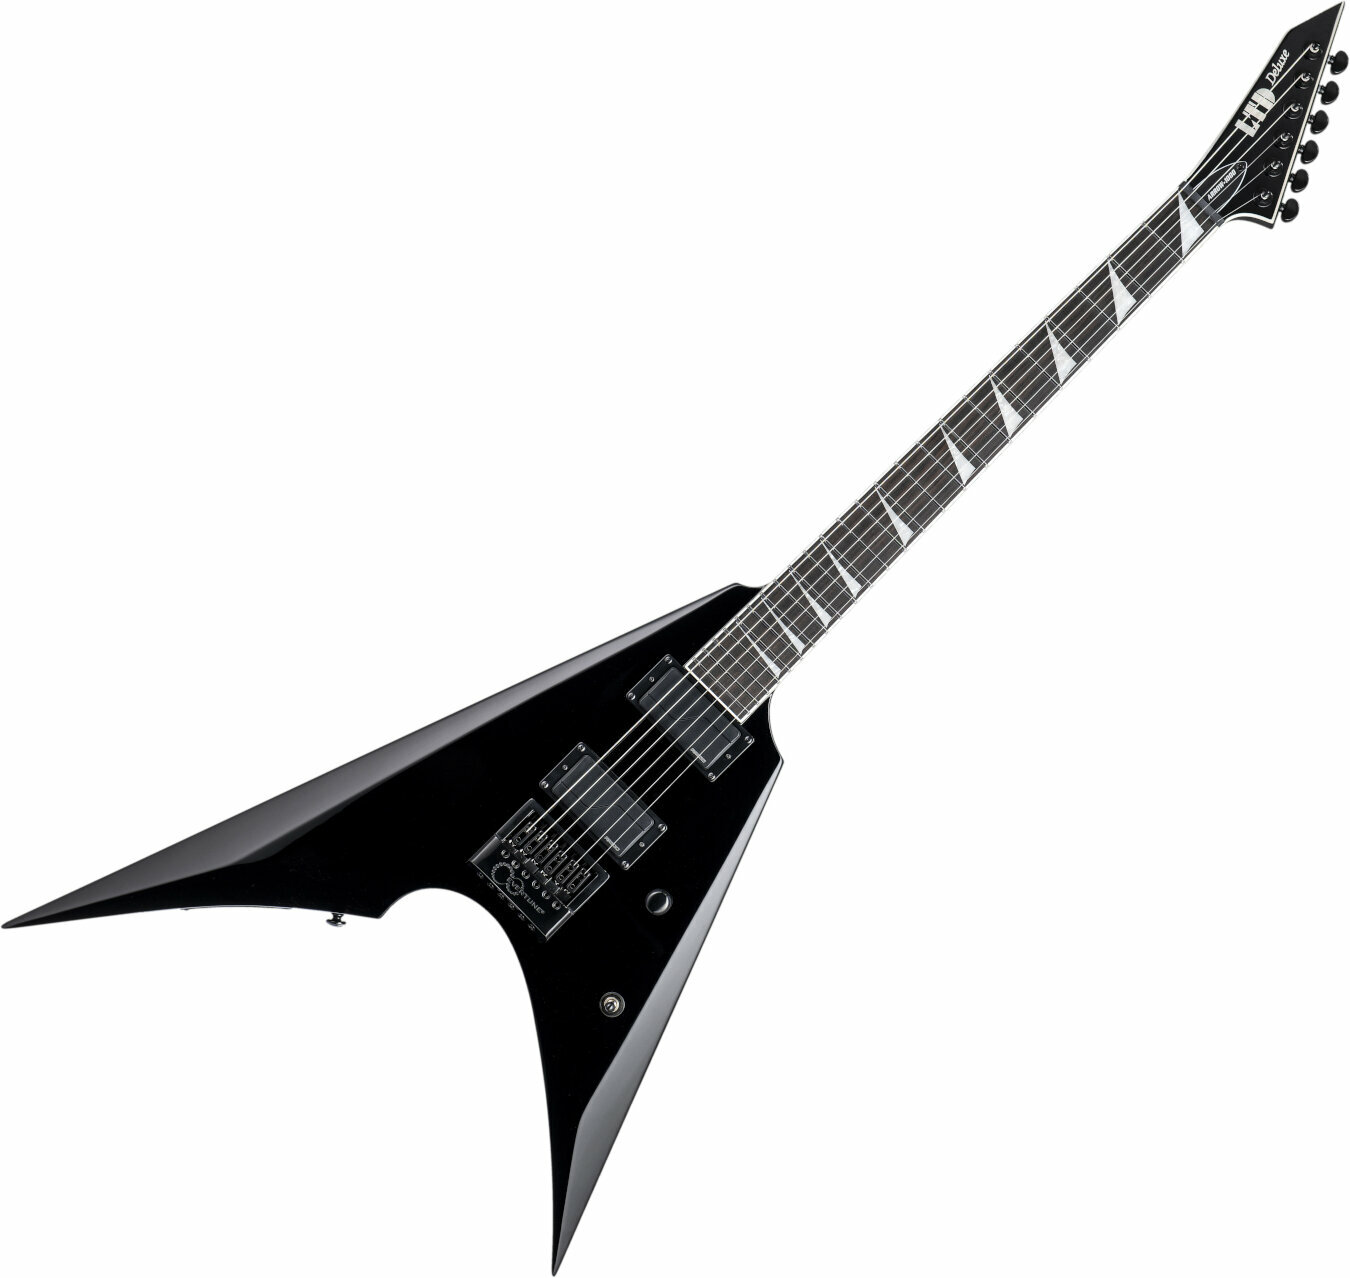 Ηλεκτρική Κιθάρα ESP LTD Arrow-1000 Evertune Black